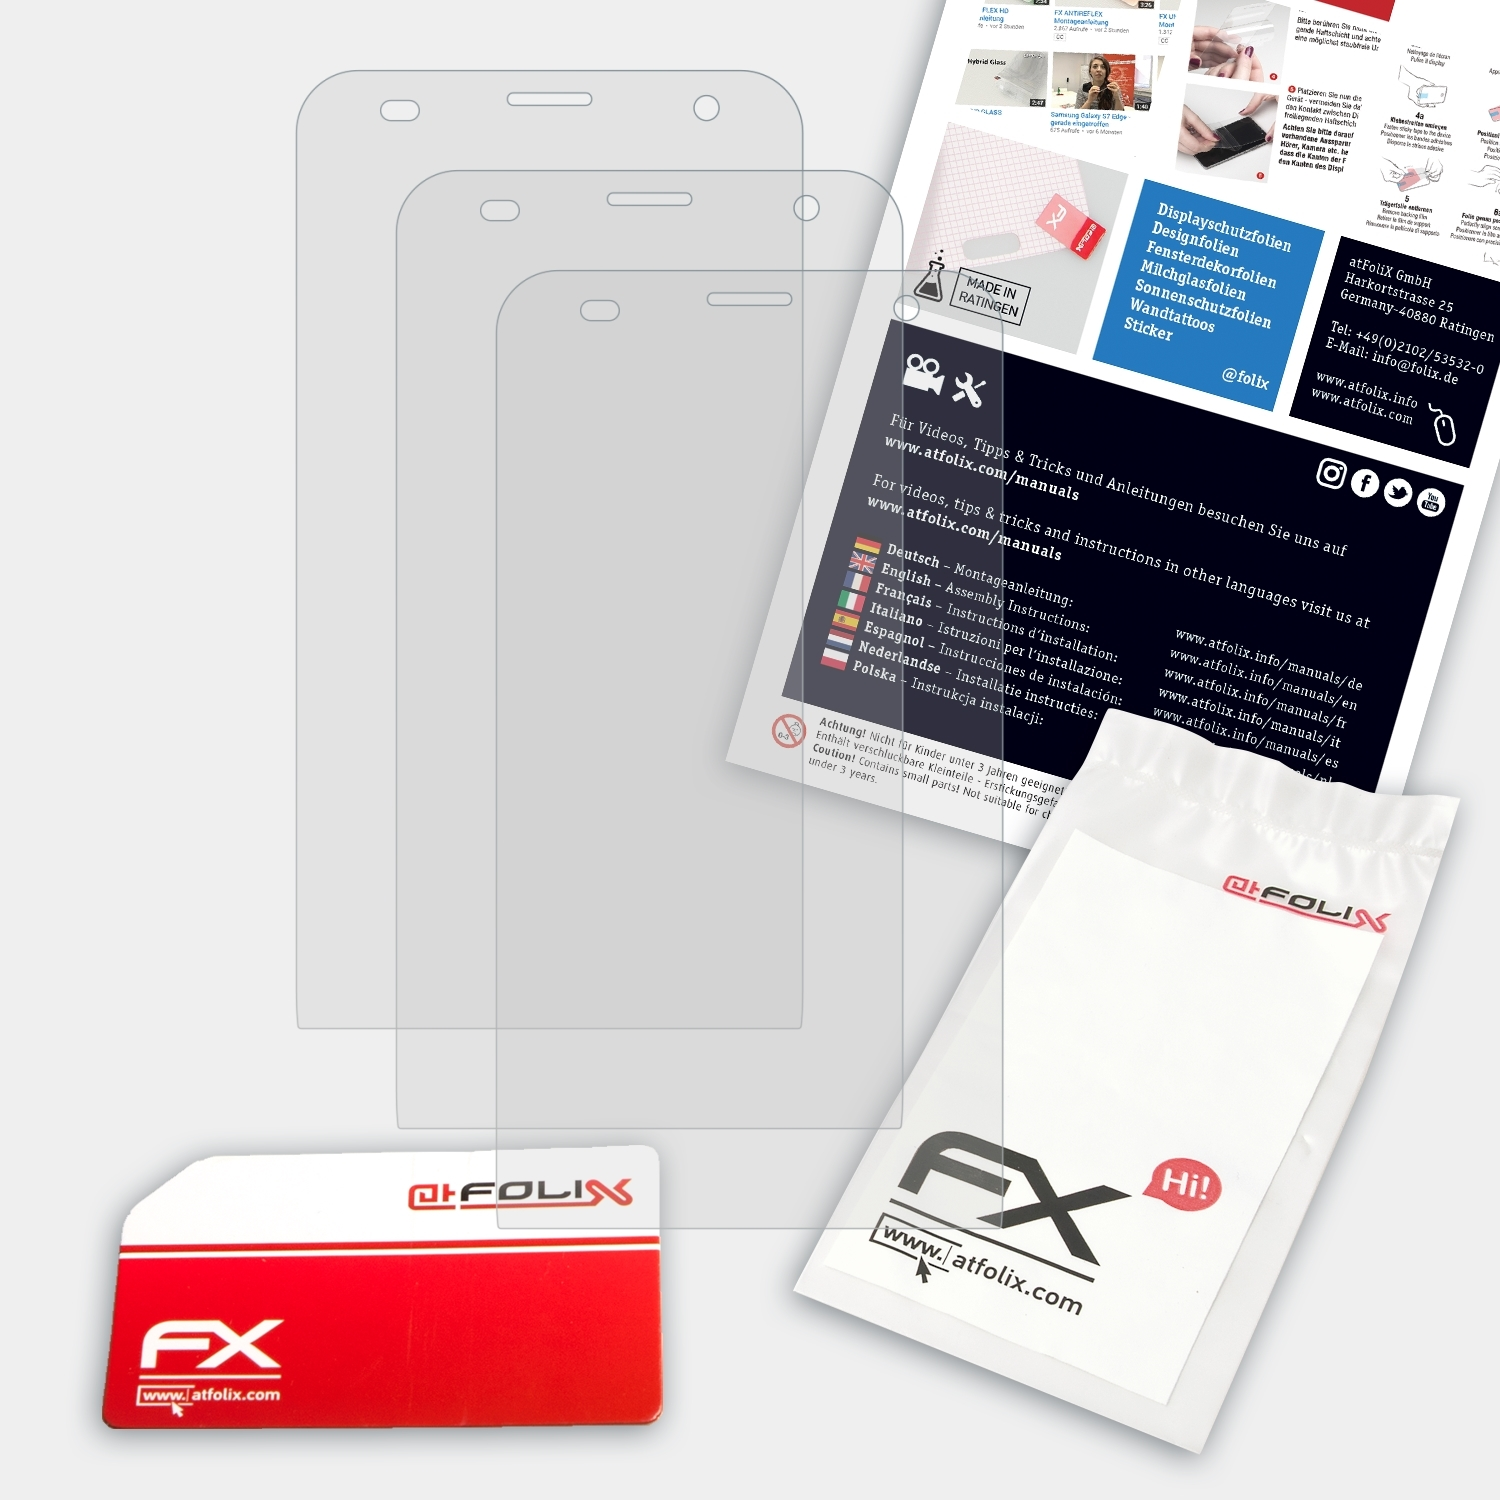 FX-Antireflex 2 Asus (ZE601KL)) 3x Displayschutz(für ATFOLIX Zenfone Laser